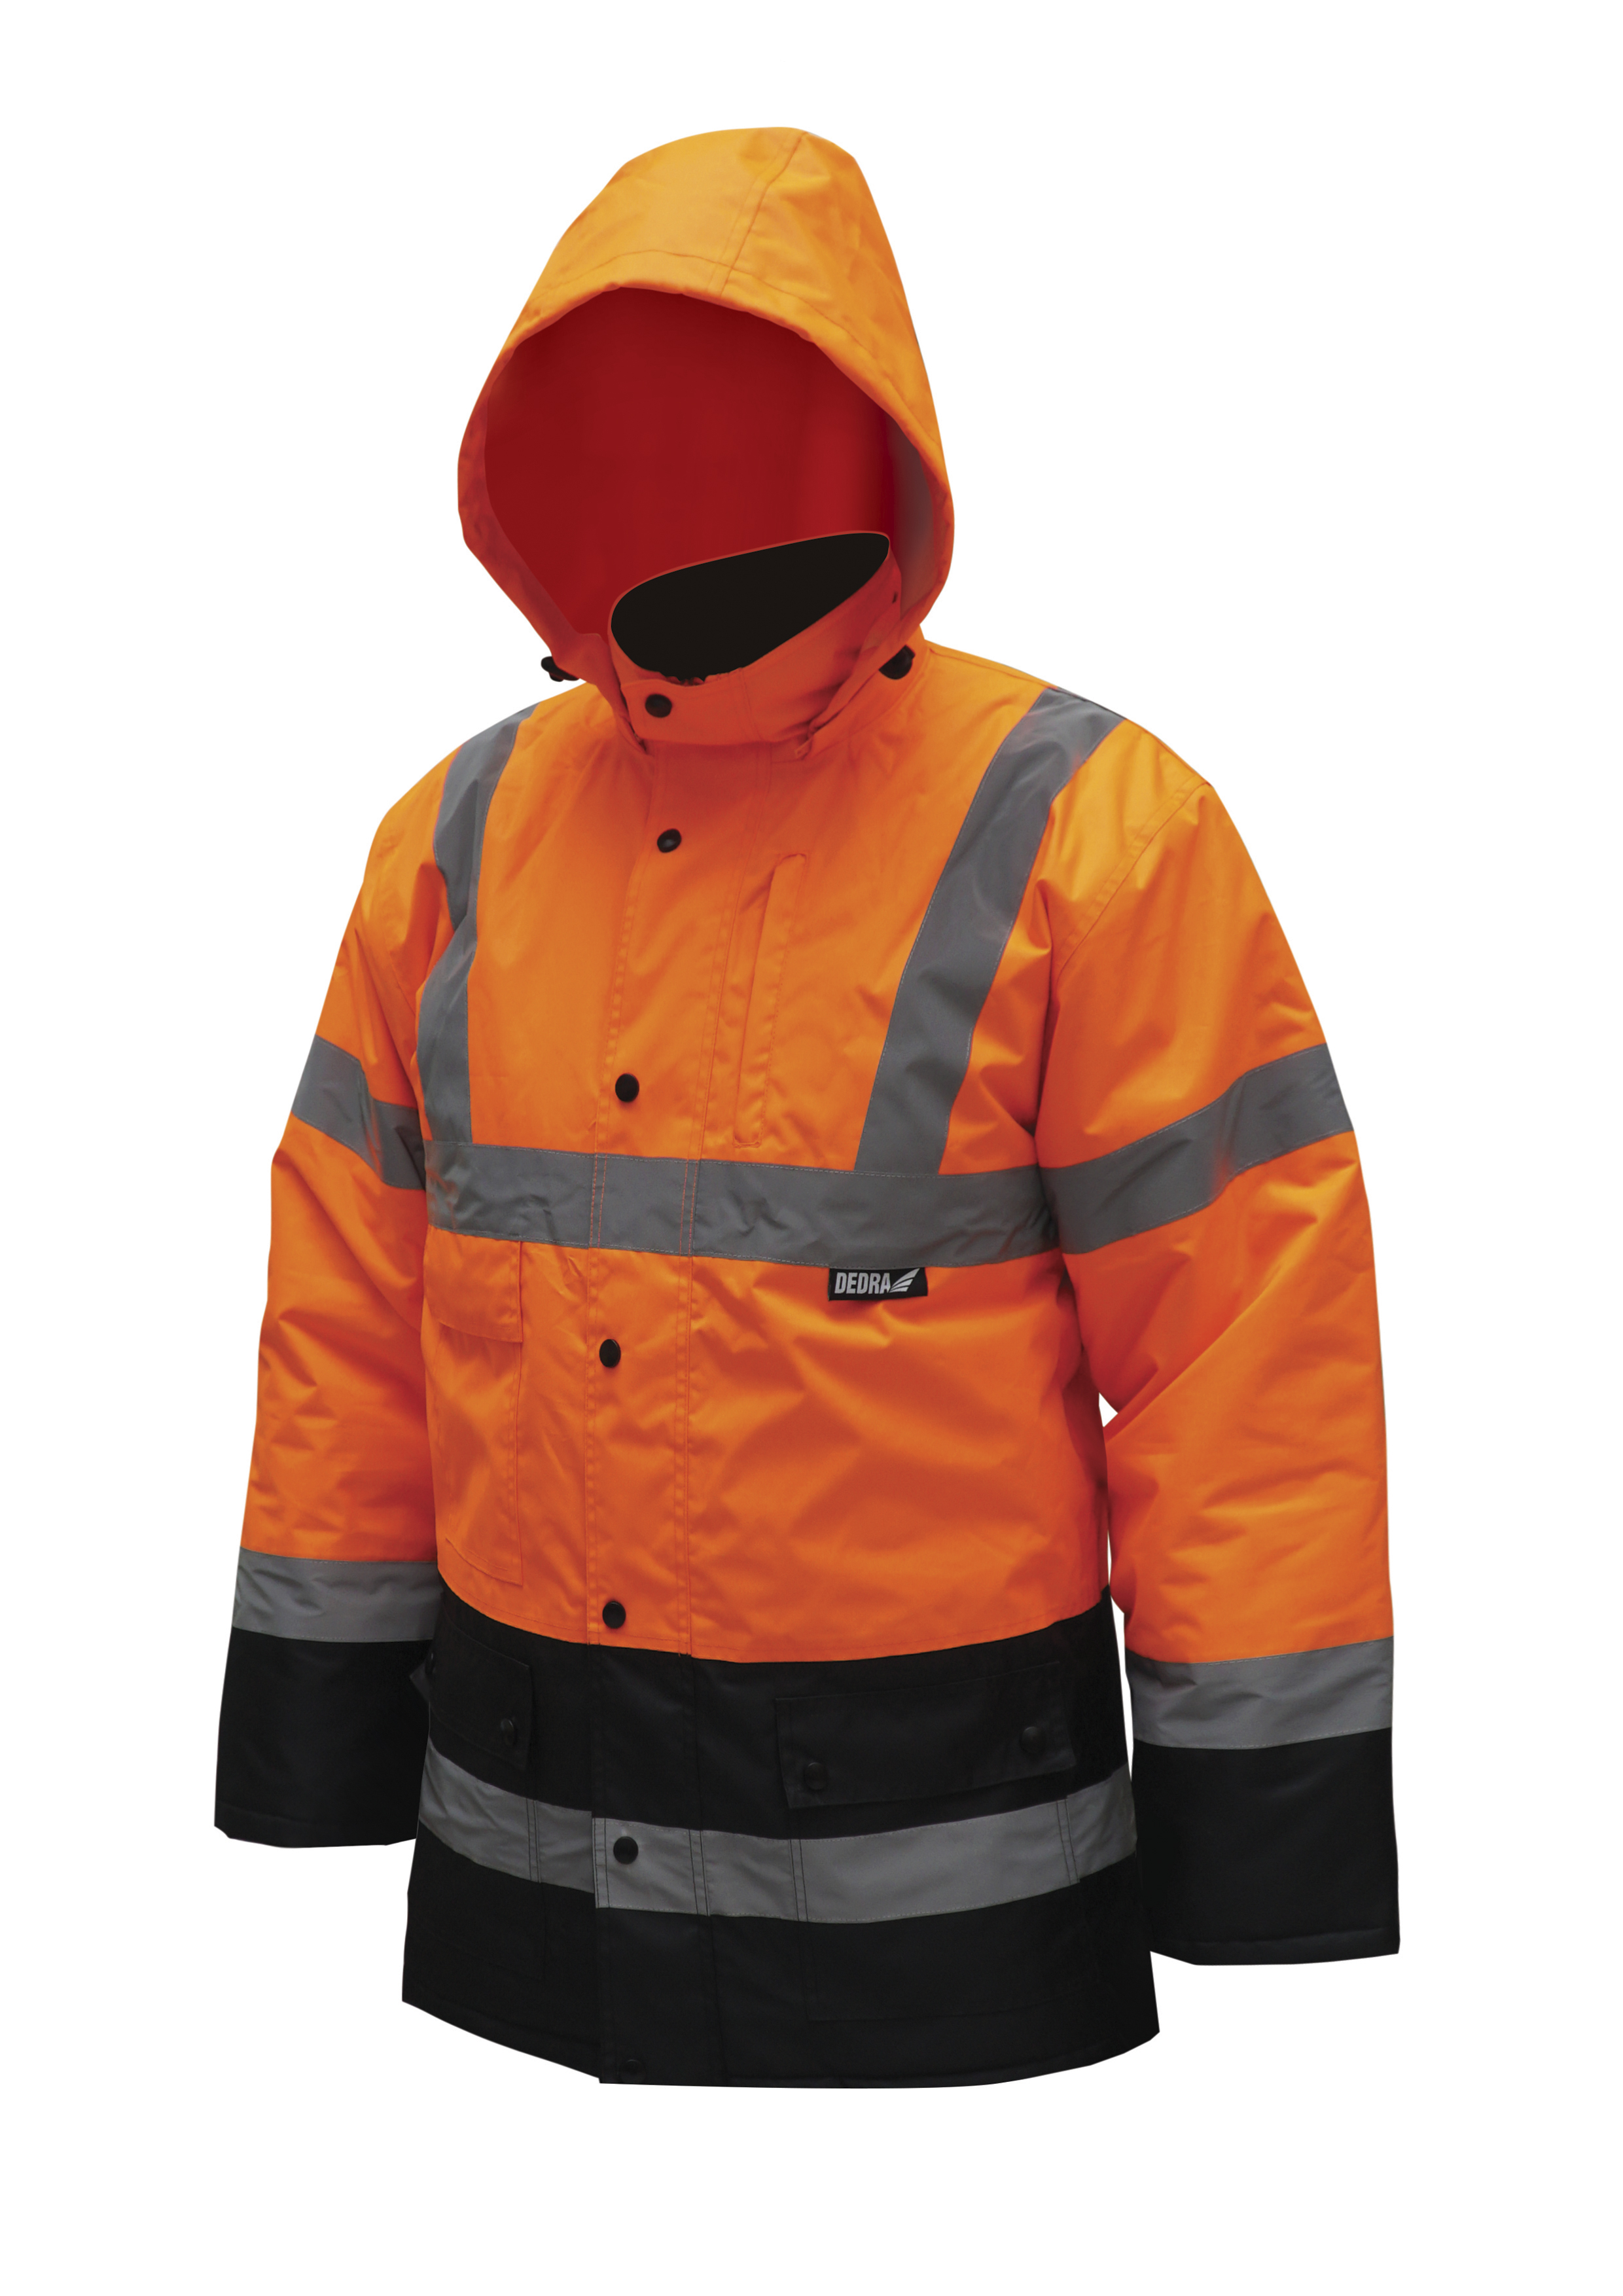 Reflexní zateplená bunda parka,velikost M,oranžová DEDRA BH80K4-M + Dárek, servis bez starostí v hodnotě 300Kč